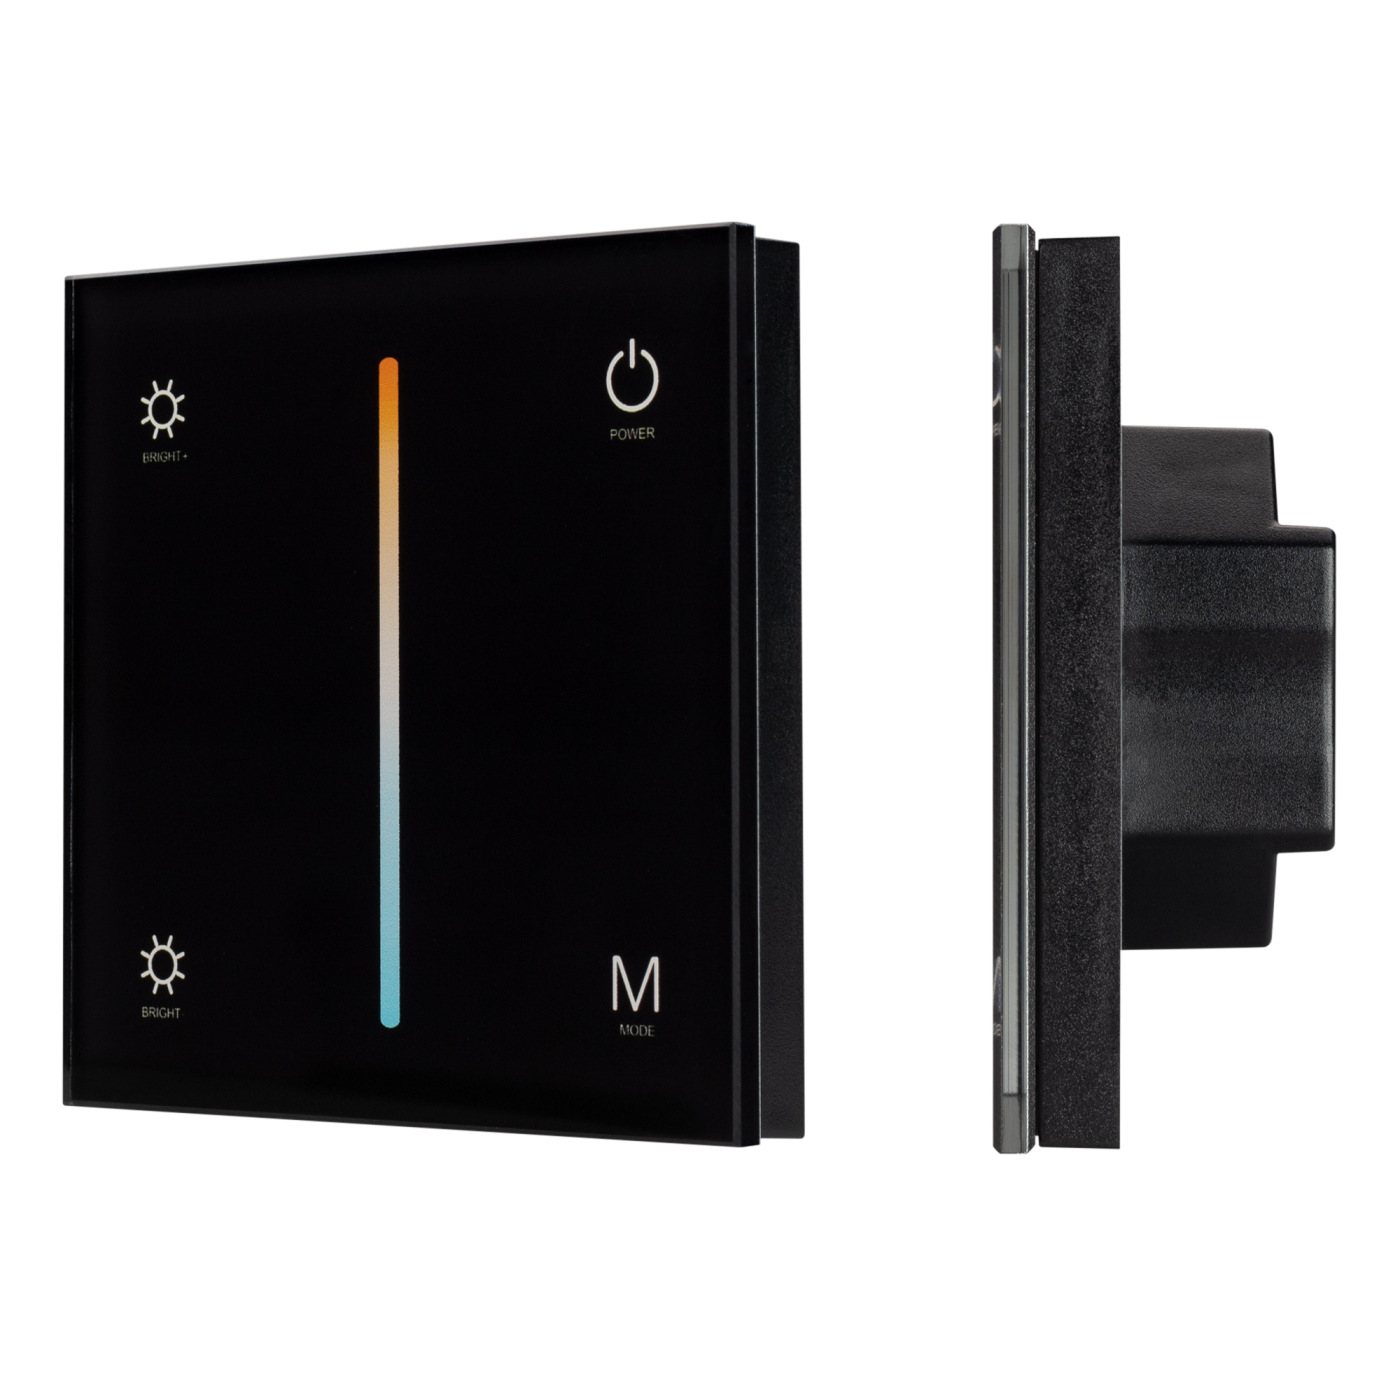 Панель SMART-P21-MIX-G-IN Black (12-24V, 4x3A, Sens, 2.4G) (Arlight, IP20 Пластик, 5 лет) сетевые фильтры isol 8 connect slave iec 2x4 black